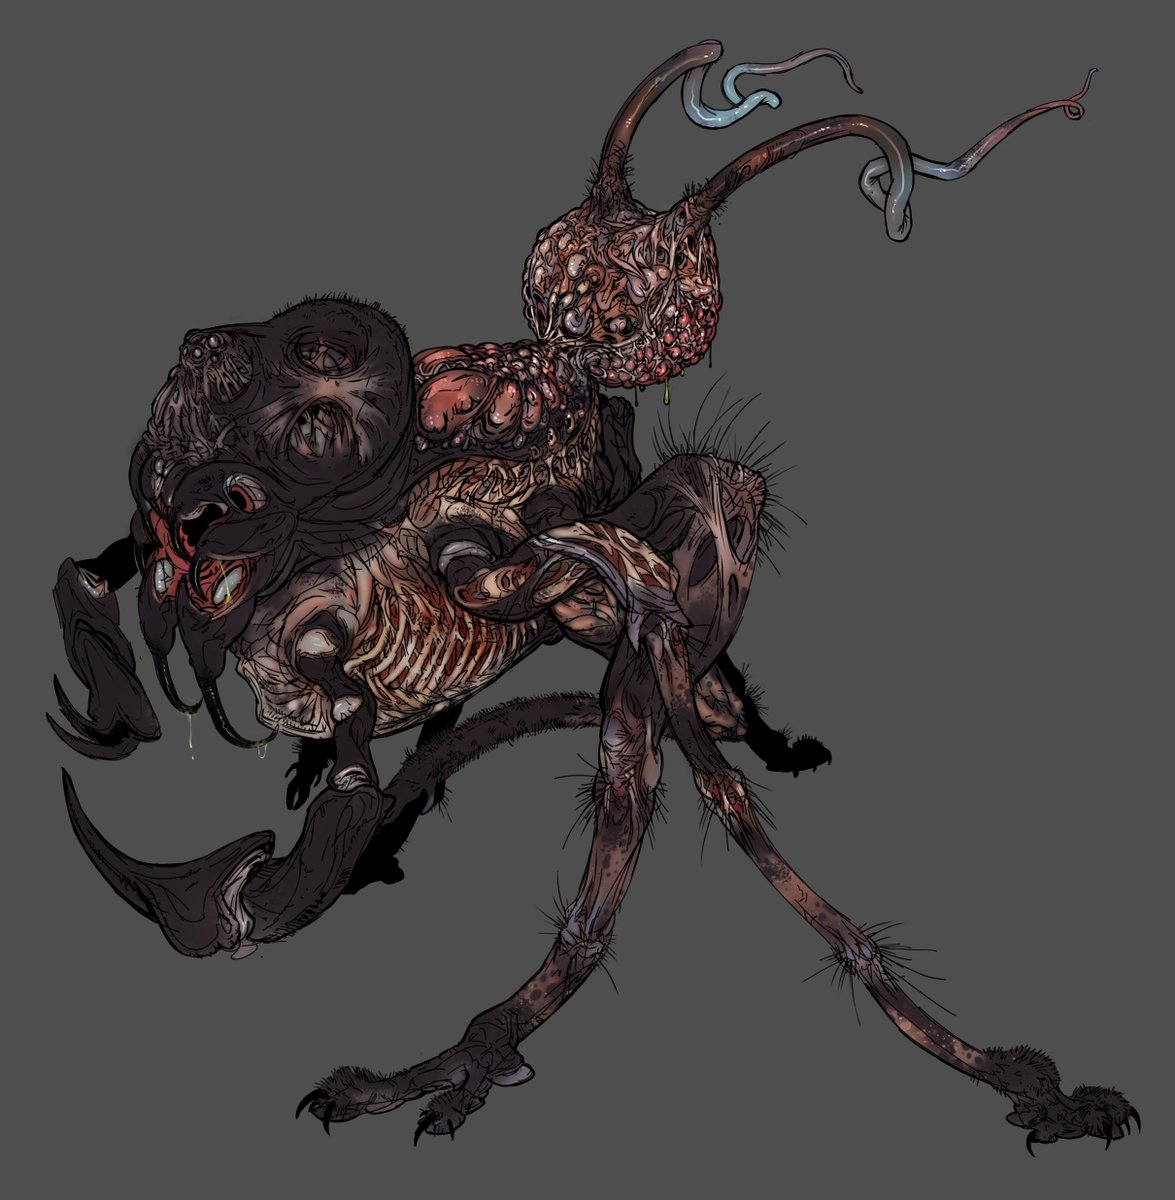 Ko-fi doodle request for a 'fleshy arachnid horror'